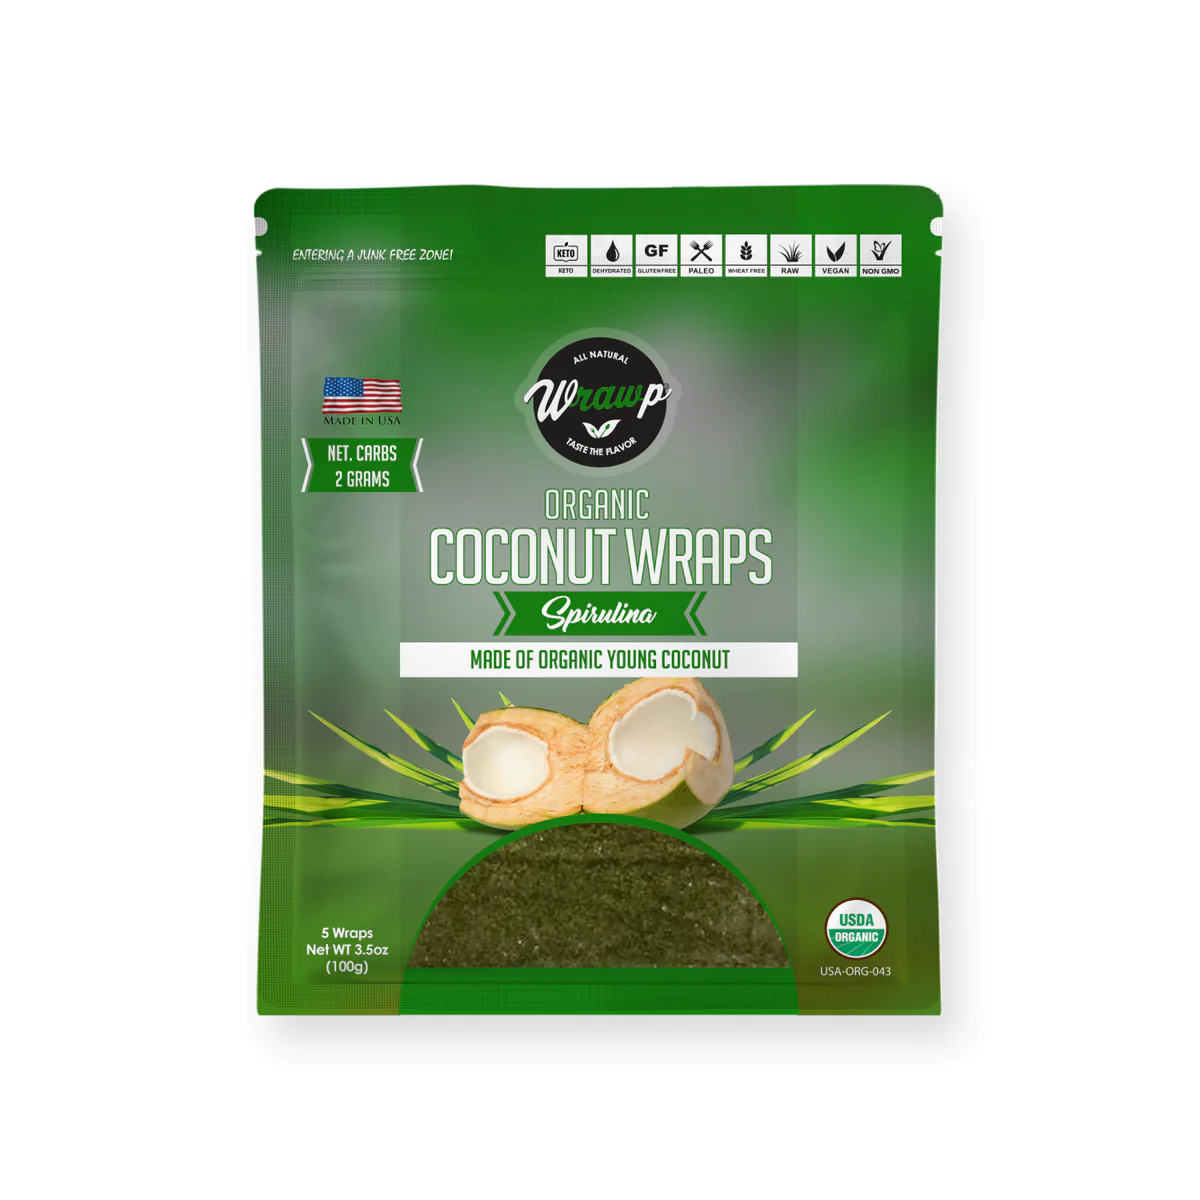 WrawP Coconut Wraps - Spirulina (80g - 5 wraps)